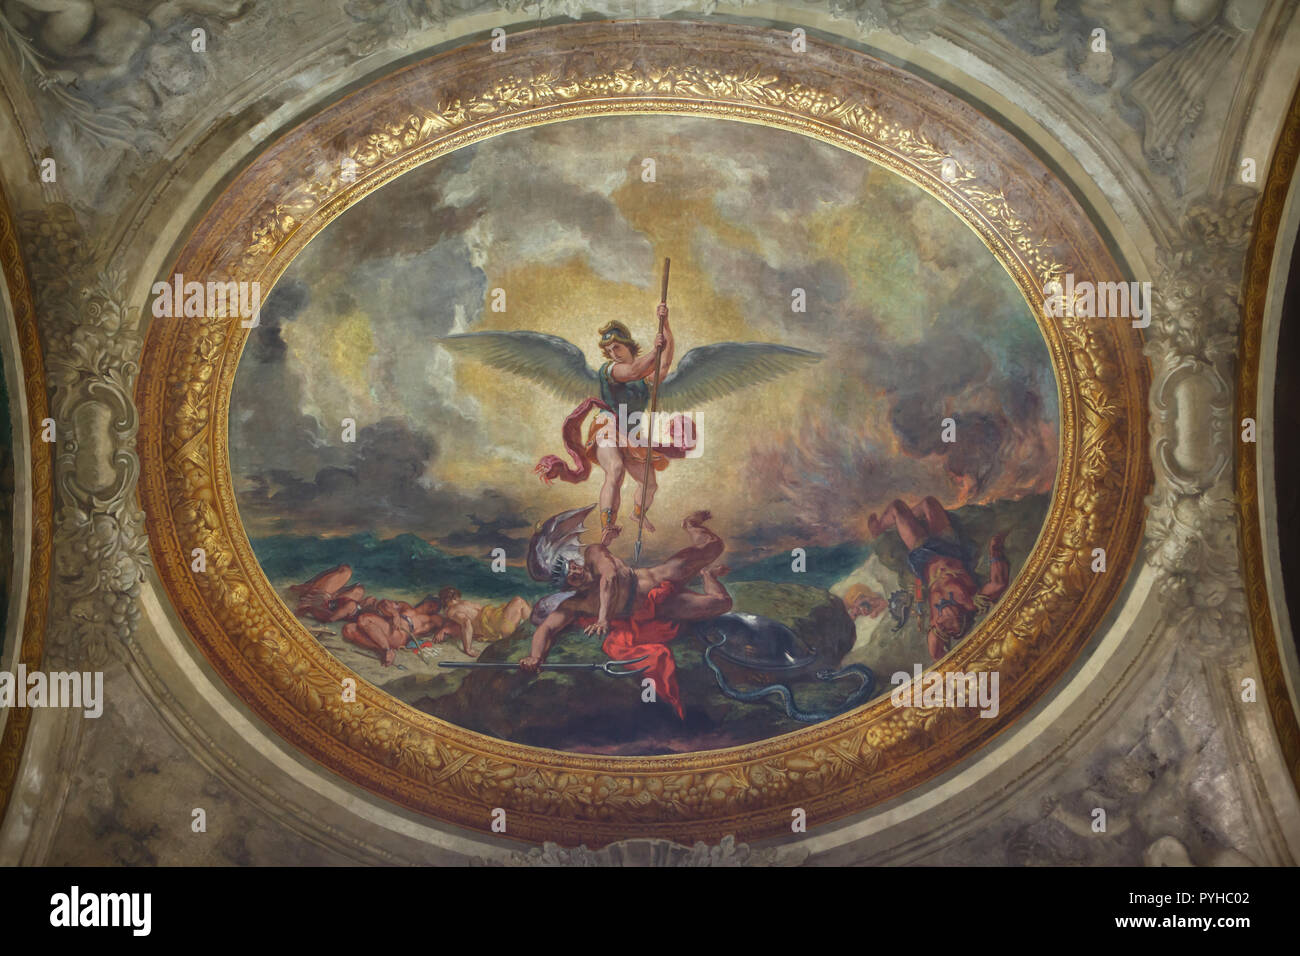 L'Archange Michael vaincre le diable. Plafond fresque peinture de peintre romantique français Eugène Delacroix (1855-1861) dans la chapelle des Saints Anges dans l'église de Saint-Sulpice (église Saint-Sulpice) à Paris, France. Banque D'Images